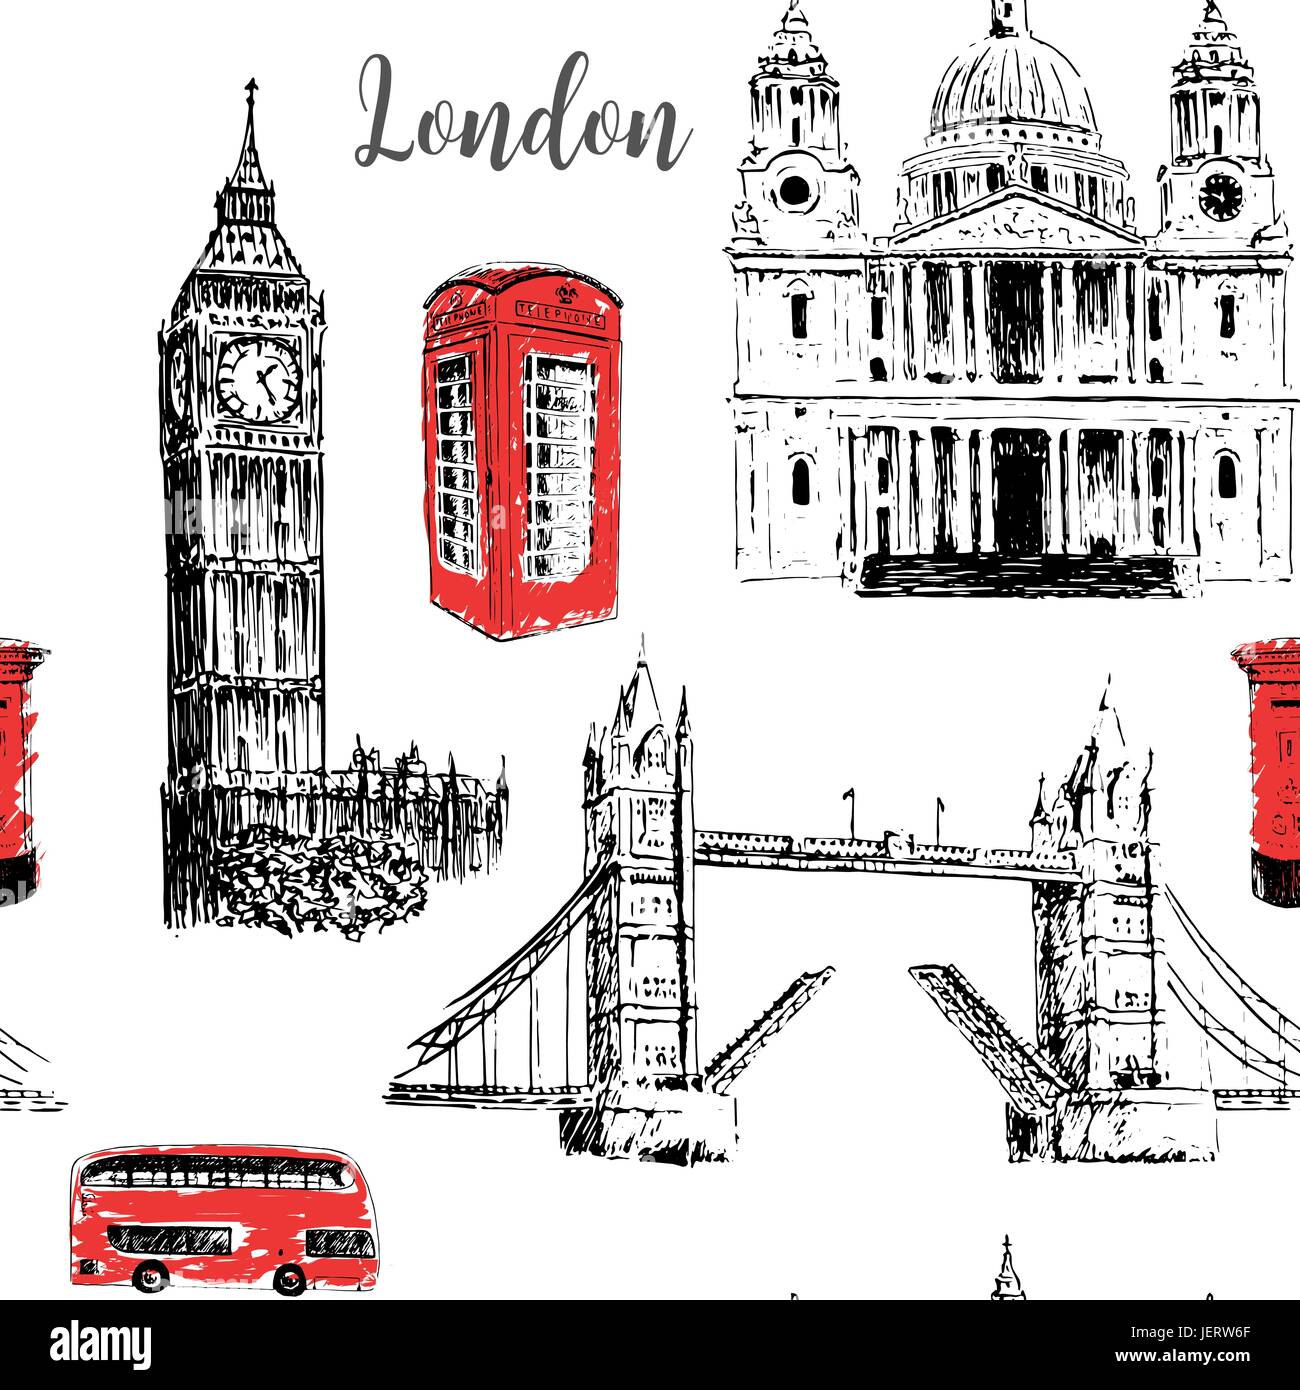 London-Symbole: St. Paul Cathedral, Big Ben und die Tower Bridge. Wunderschöne handgezeichnete Skizze Vektorgrafik. Stock Vektor